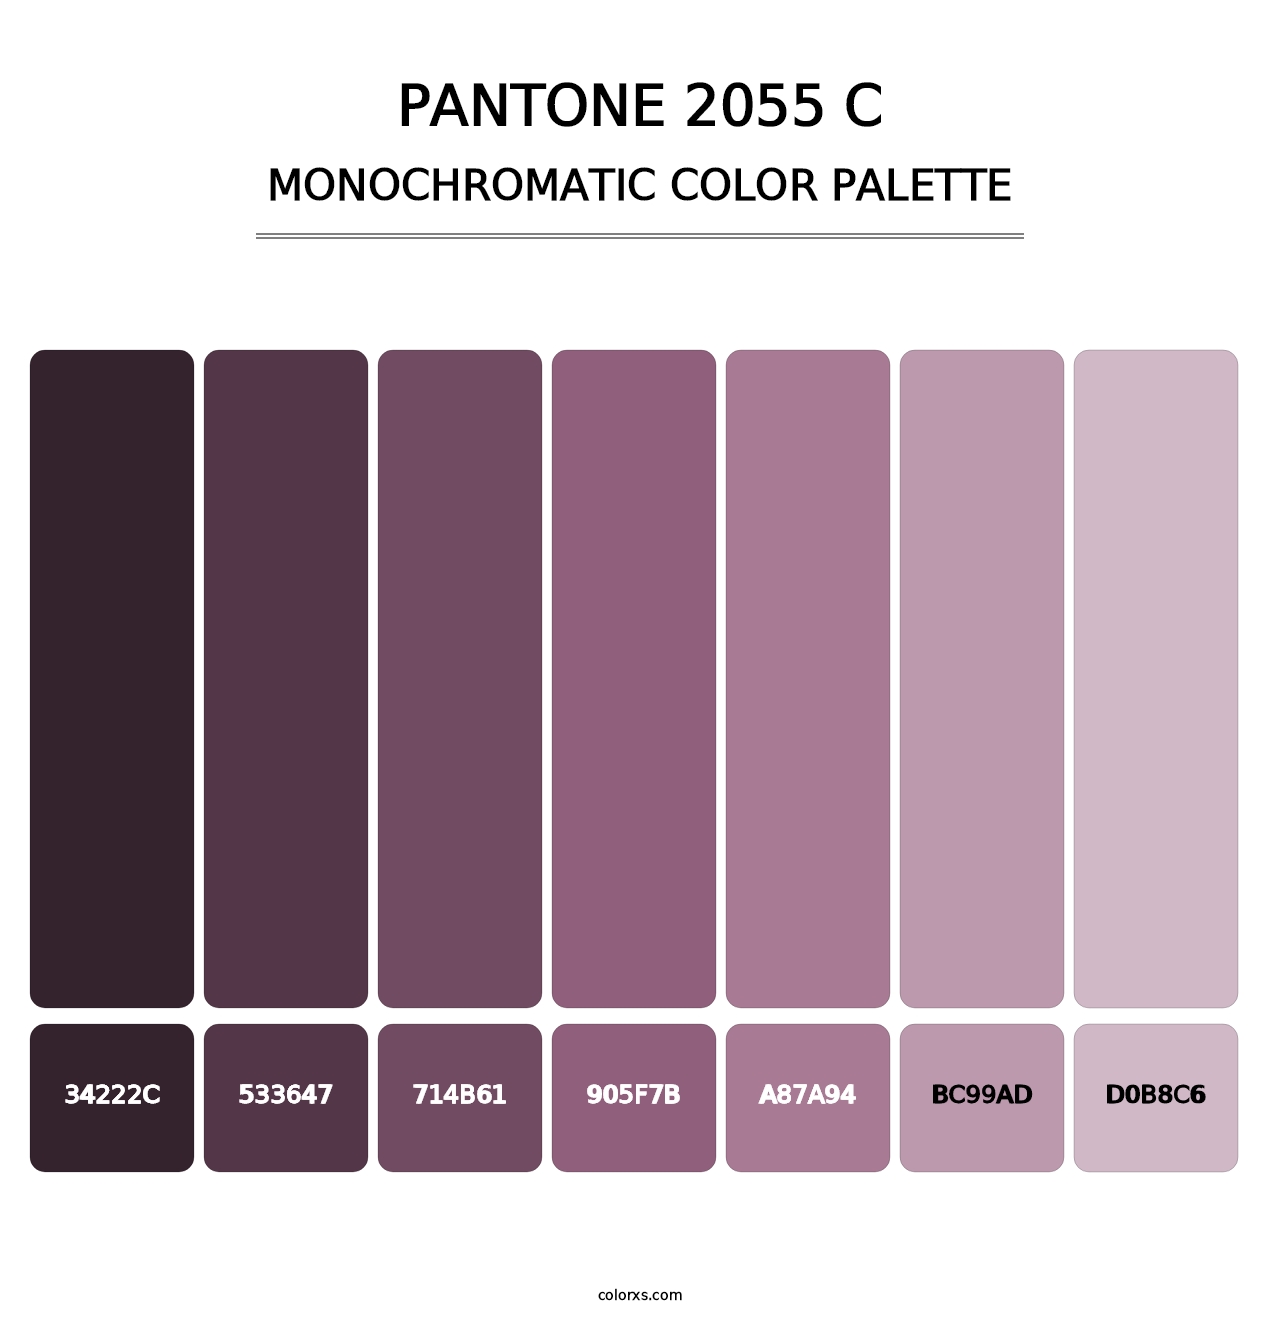 PANTONE 2055 C - Monochromatic Color Palette